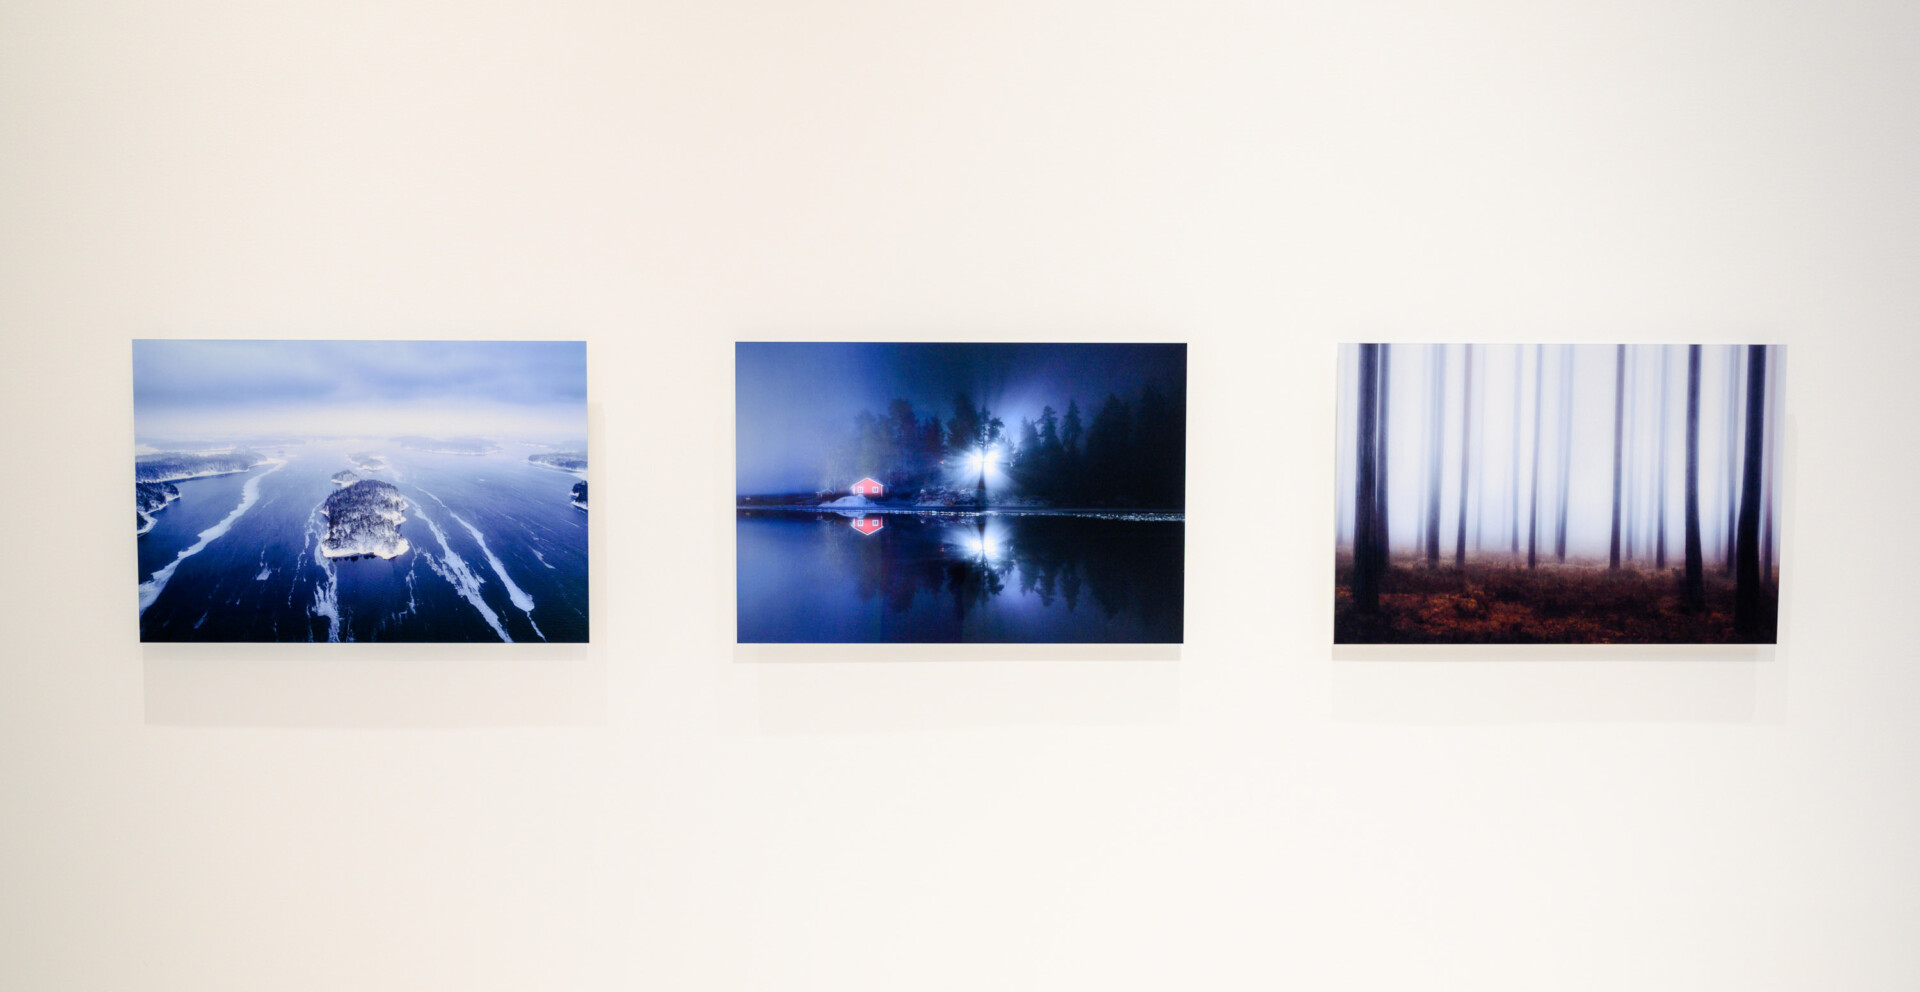 Kolme valokuvaa valkoisella seinällä. Valokuvat esittävät Inkoossa sijaitsevaa Barösundia.